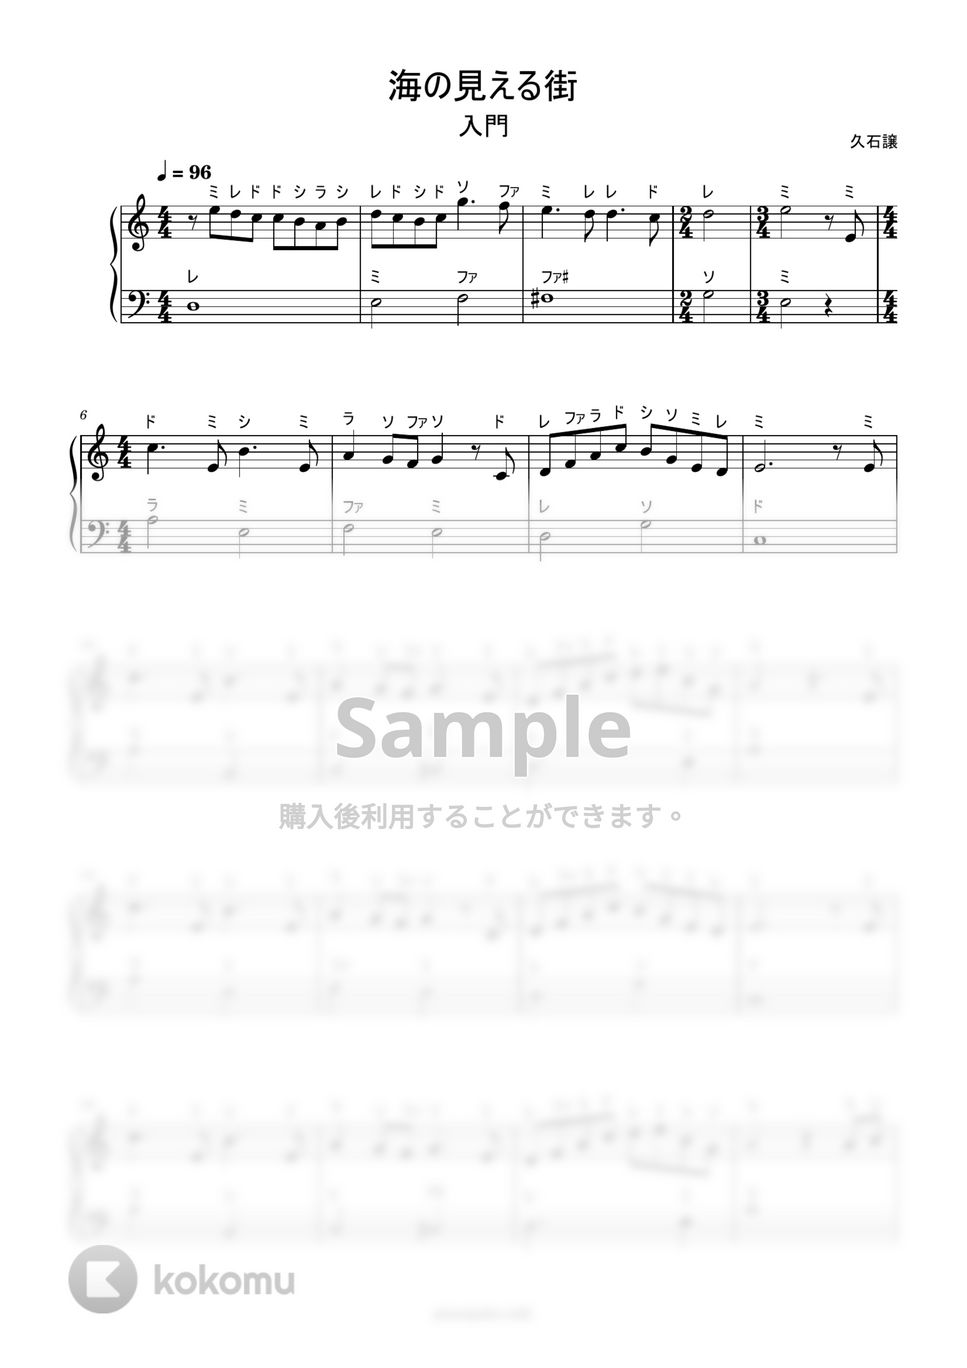 久石譲 - 海の見える街 (ドレミ付き簡単楽譜) by ピアノ塾